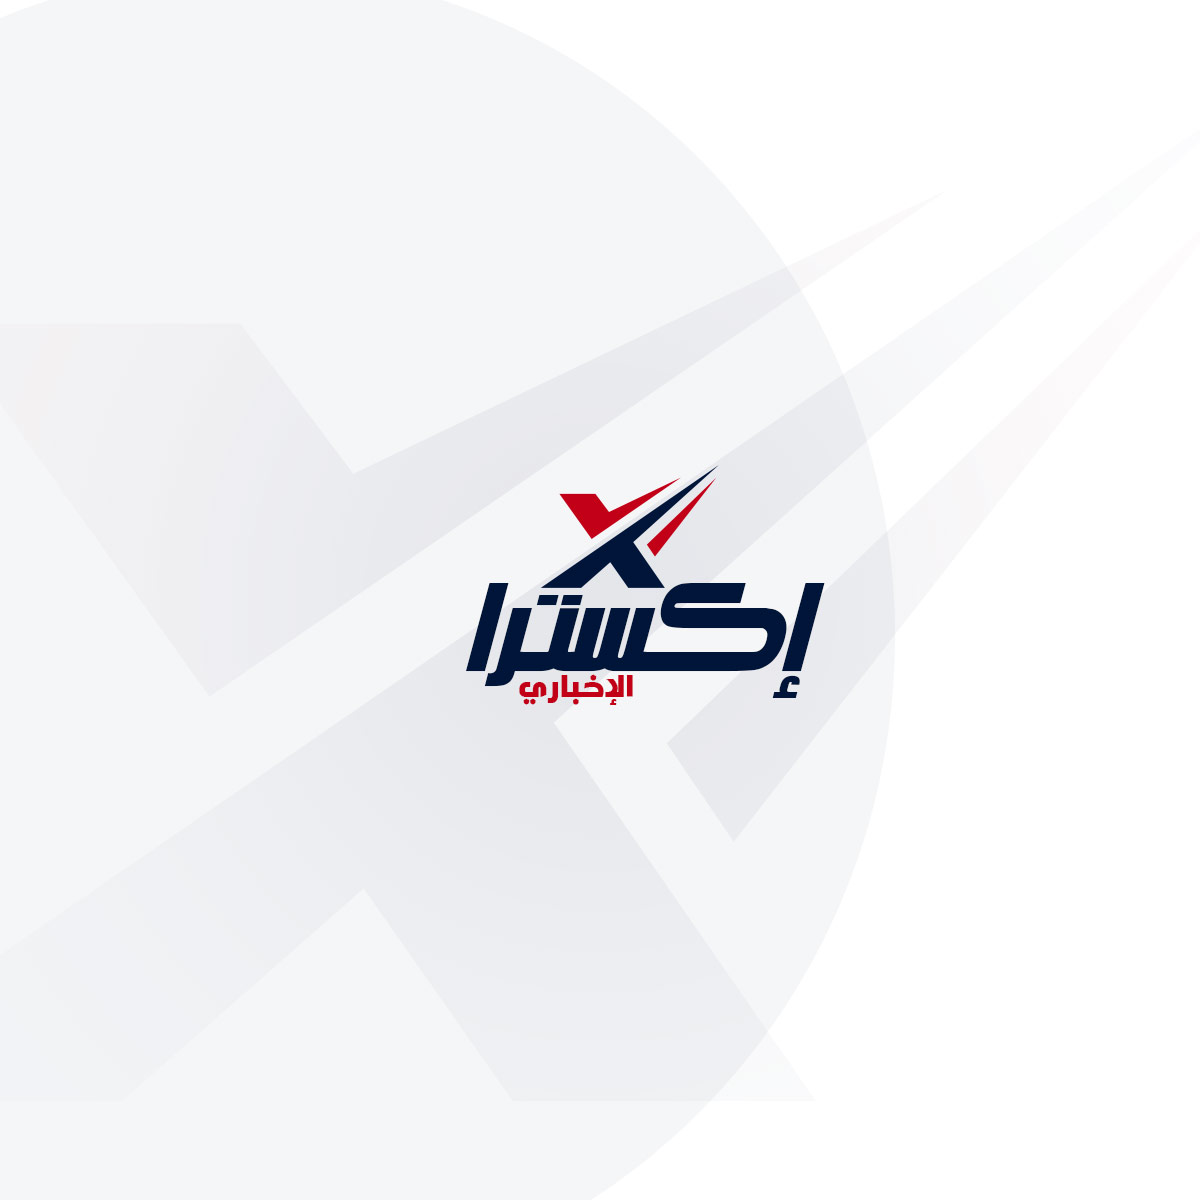 بيان رسمي من وزارة التربية والتعليم بموعد نتائج الثانوية العامة في مصر